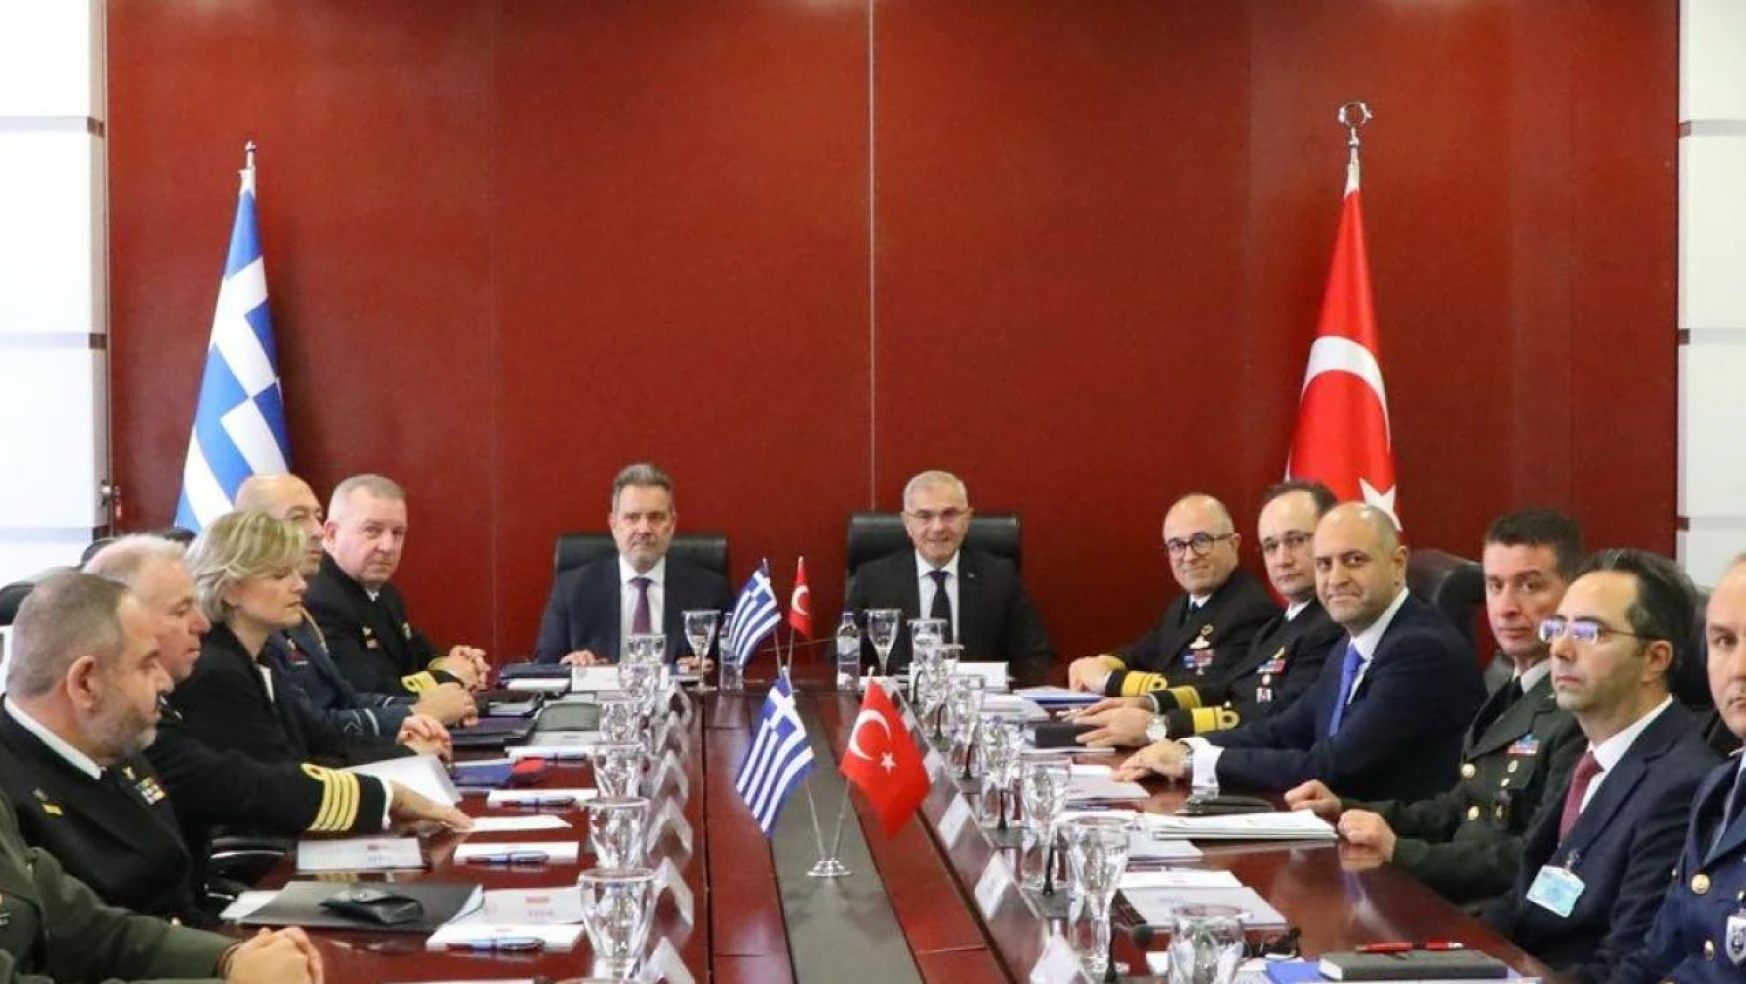 Türk askeri heyet Güven Artırıcı Önlemler çerçevesinde Yunanistan'da